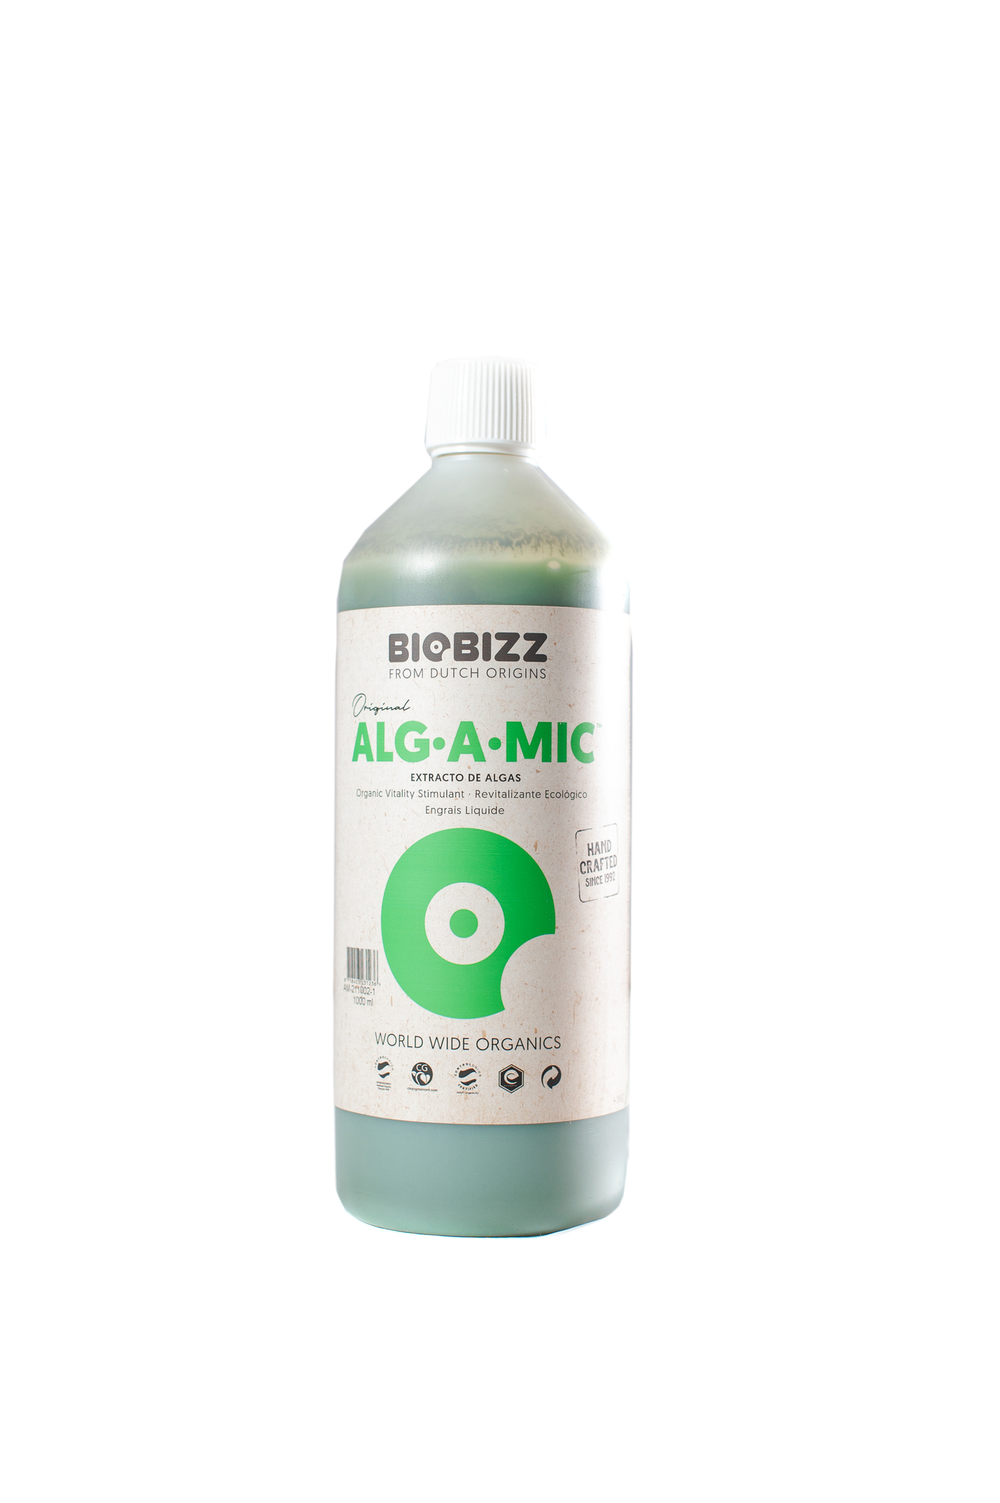 BioBizz Alg-A-mic